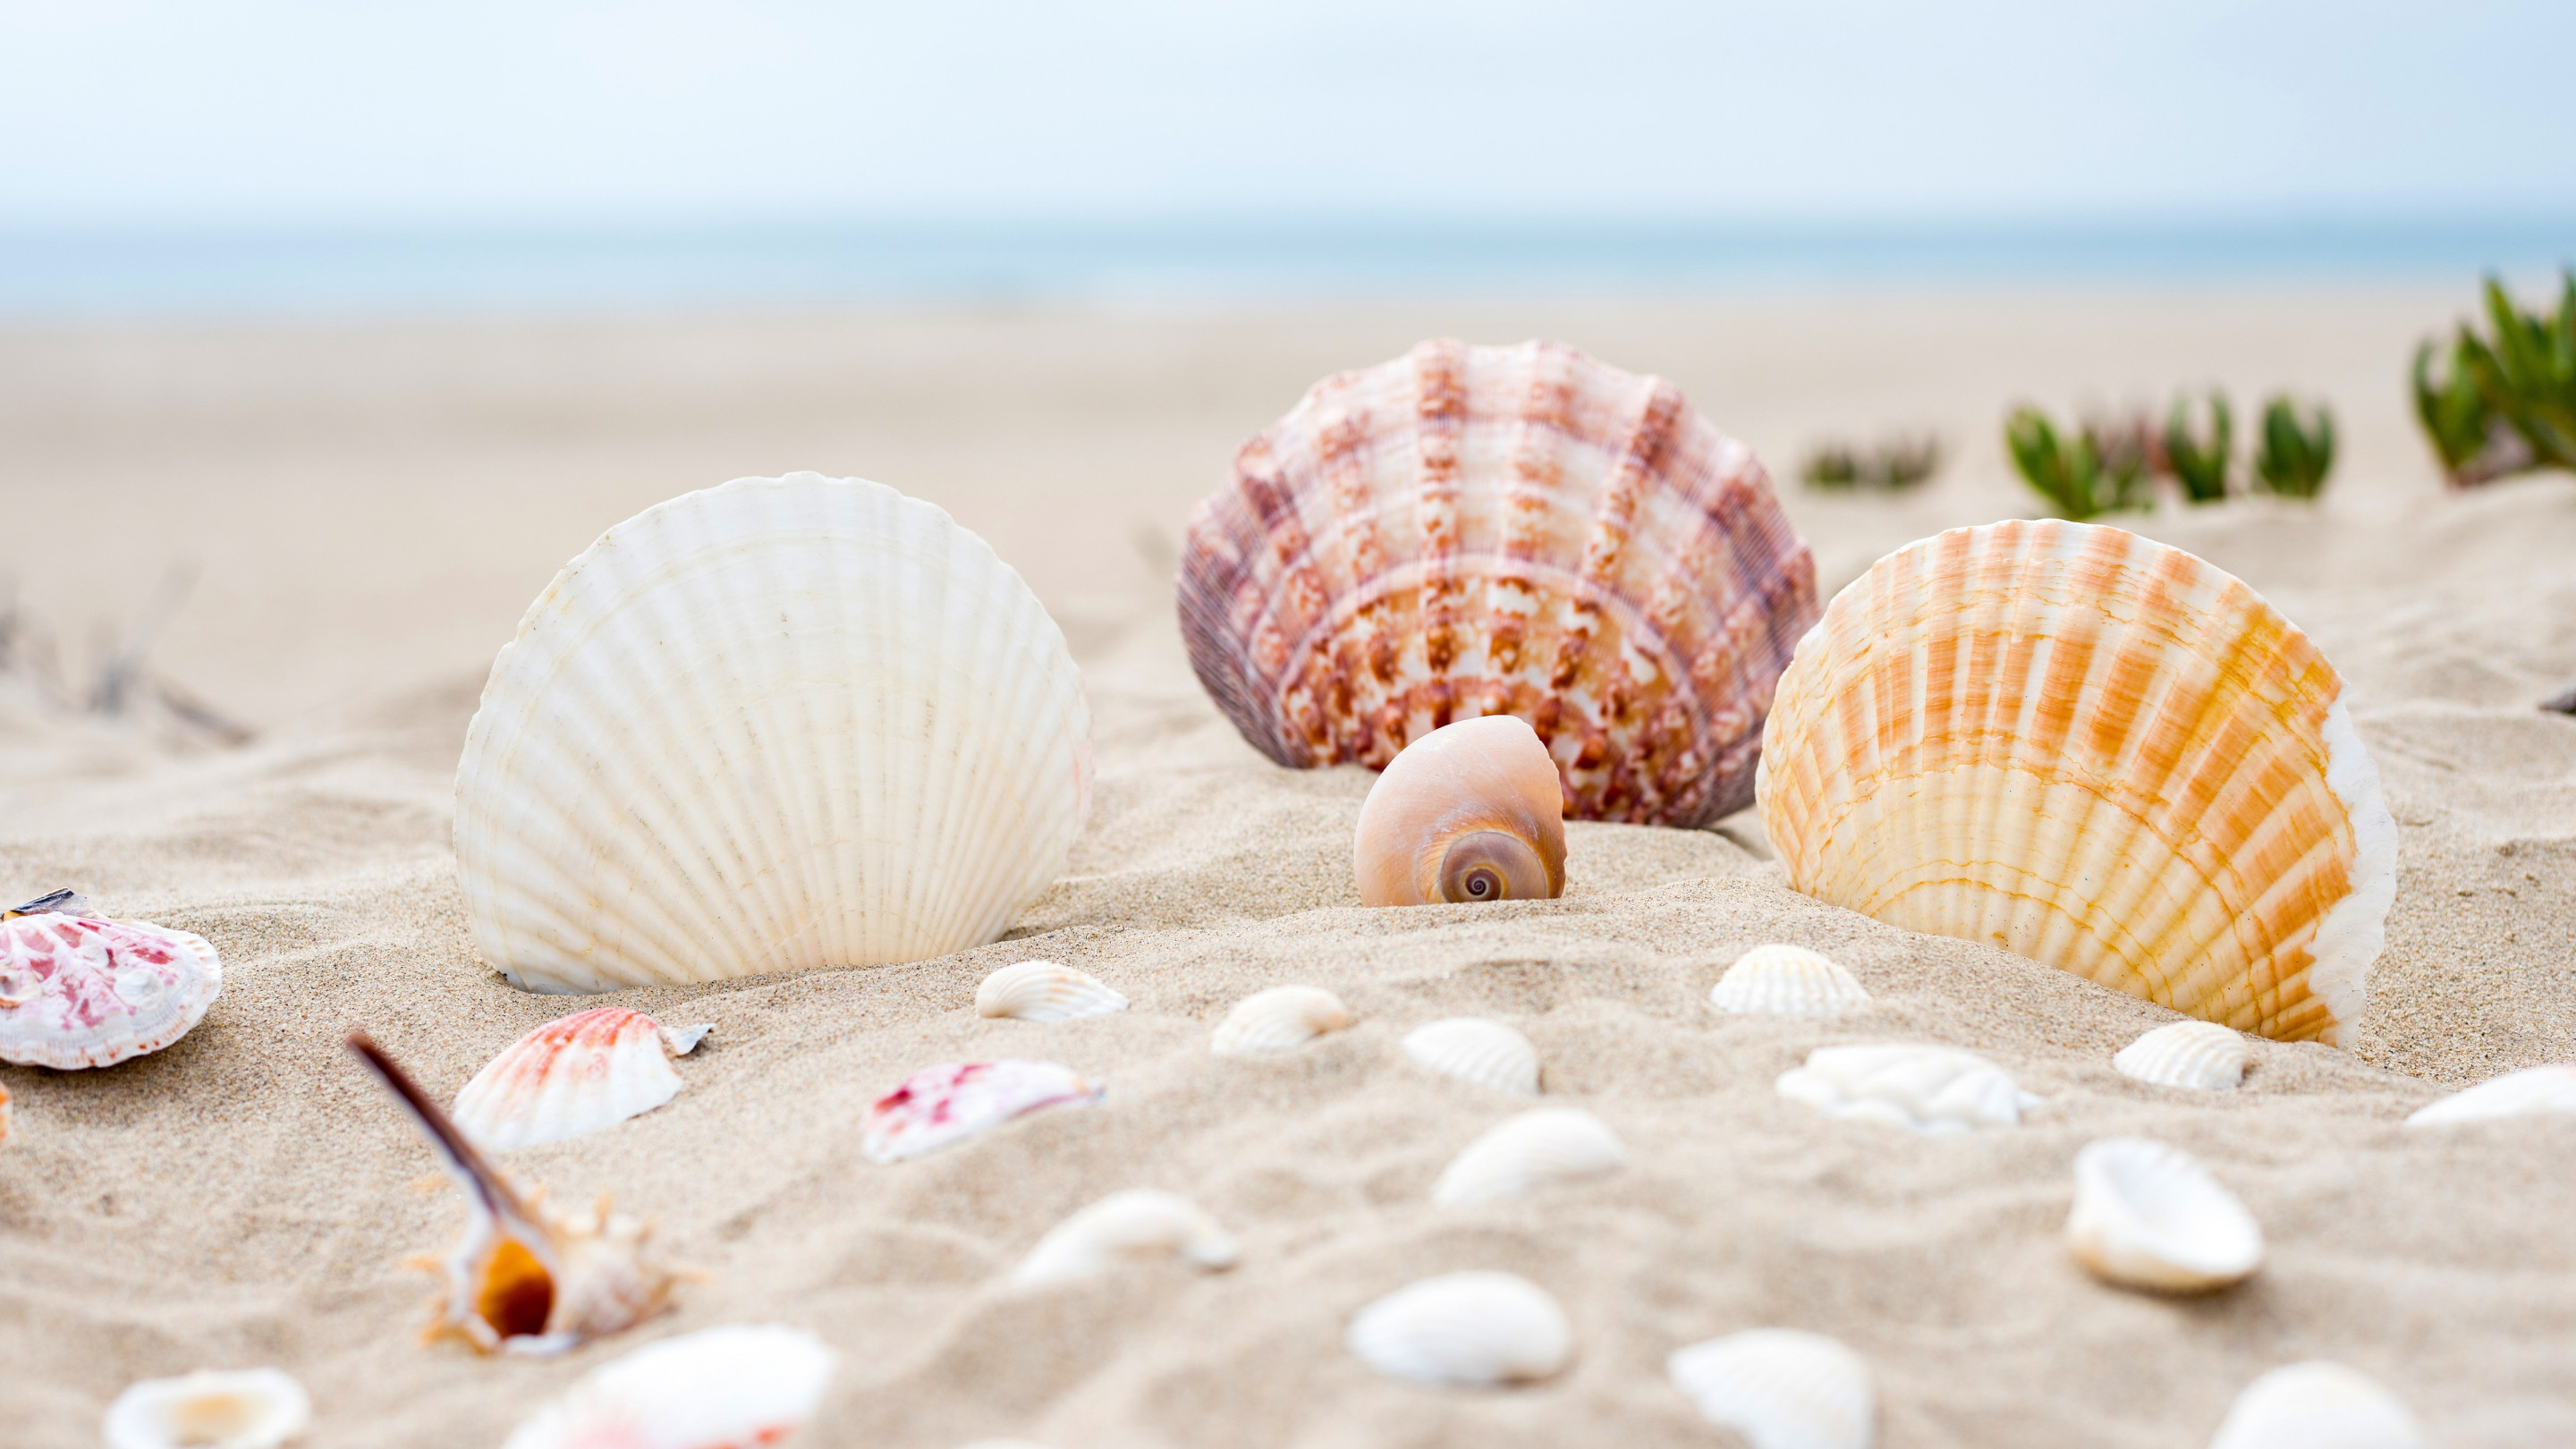 Shells on the ocean beach wallpaper 2880x1620